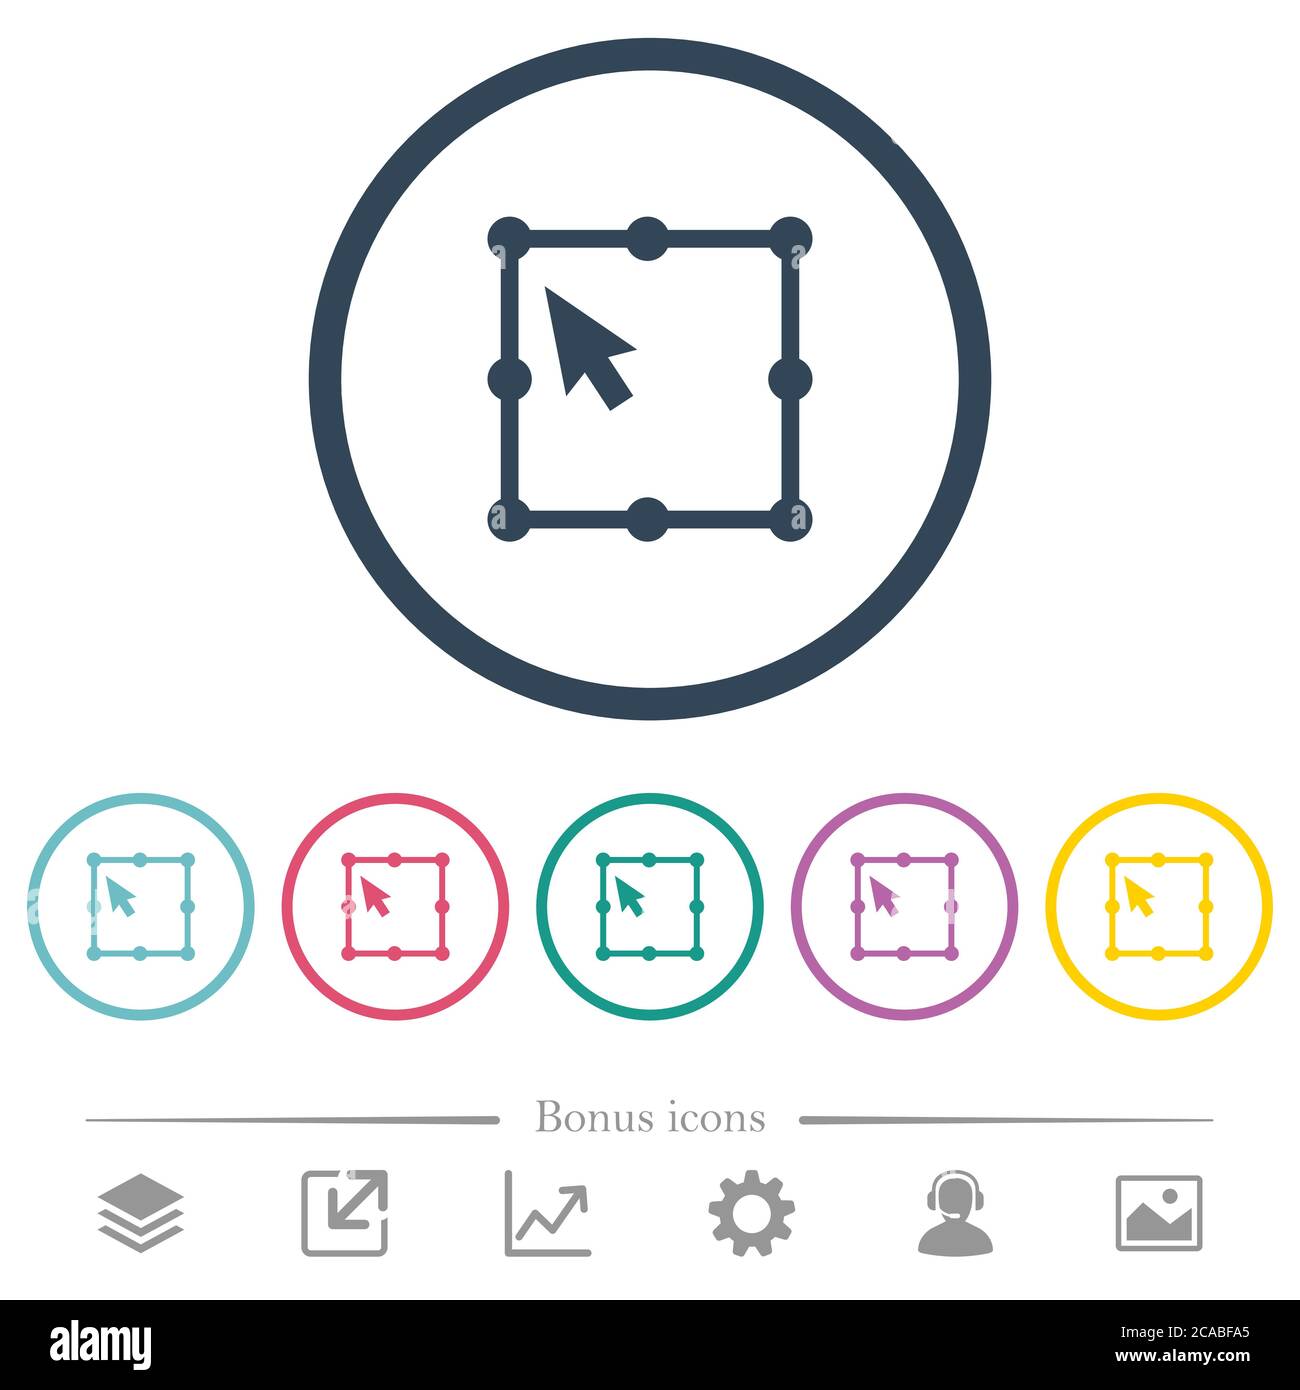 Icone a colori piatte dell'oggetto di trasformazione libera in contorni rotondi. 6 icone bonus incluse. Illustrazione Vettoriale